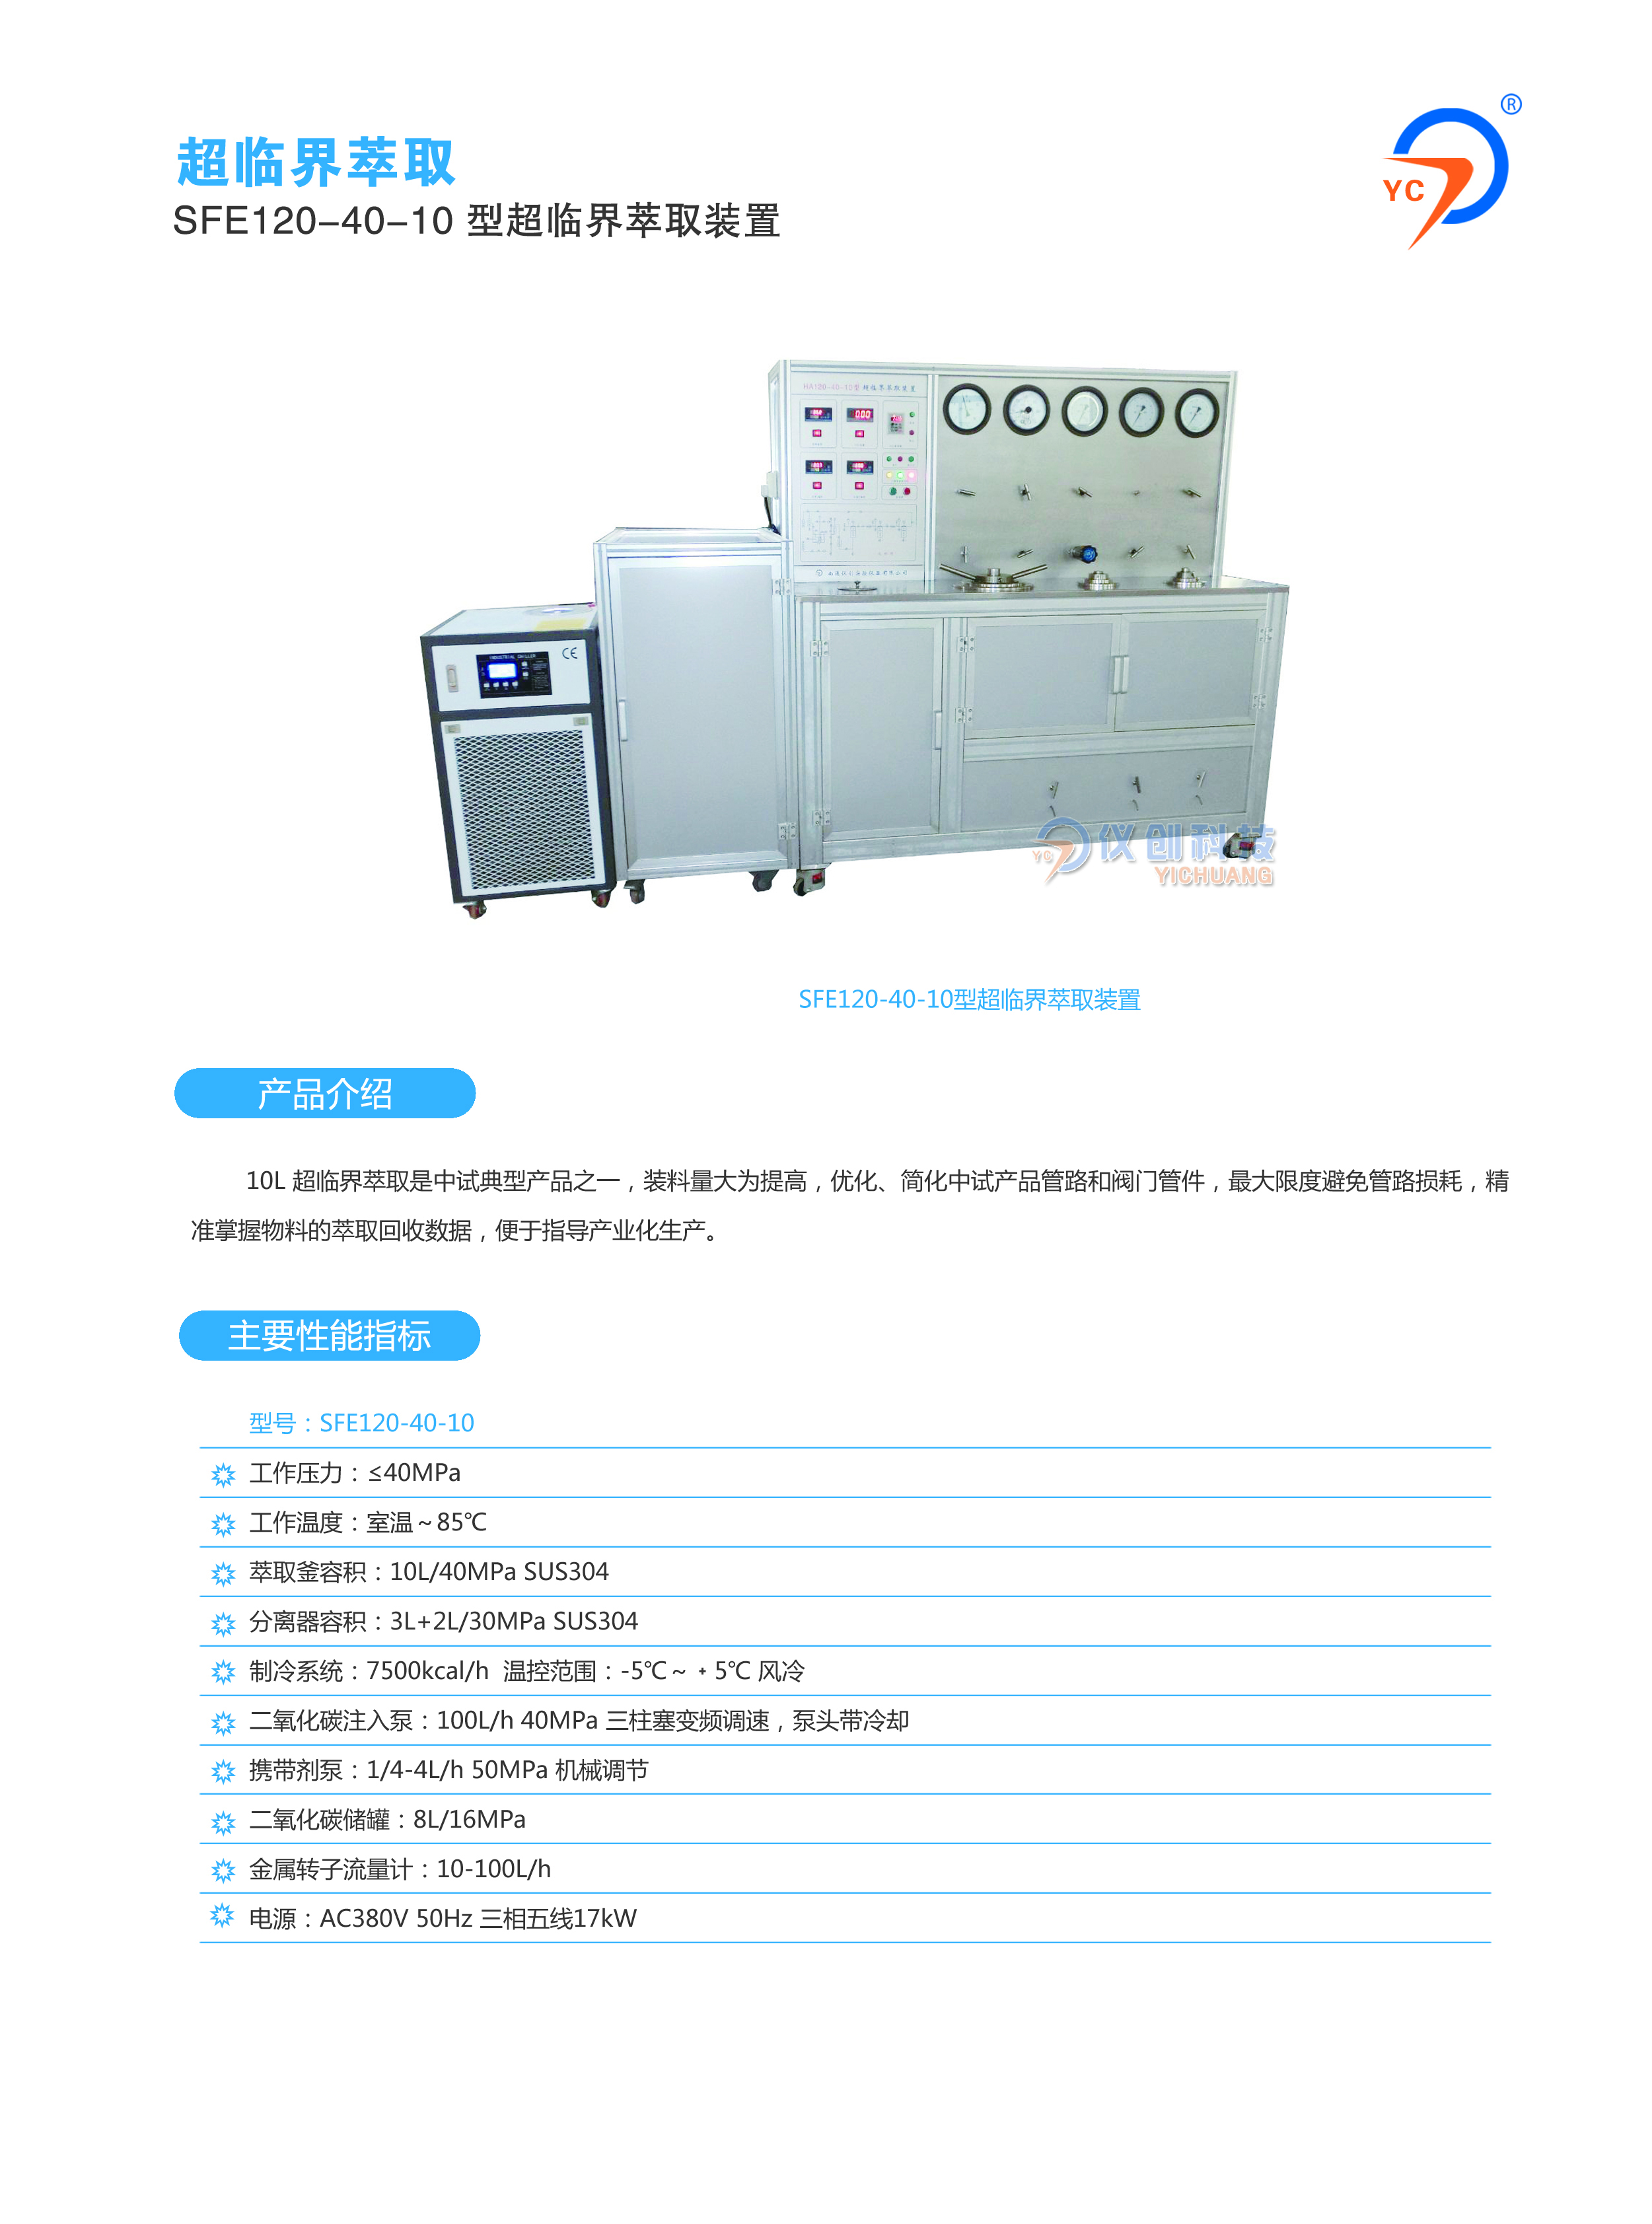 SFE120-40-10型超临界萃取装置